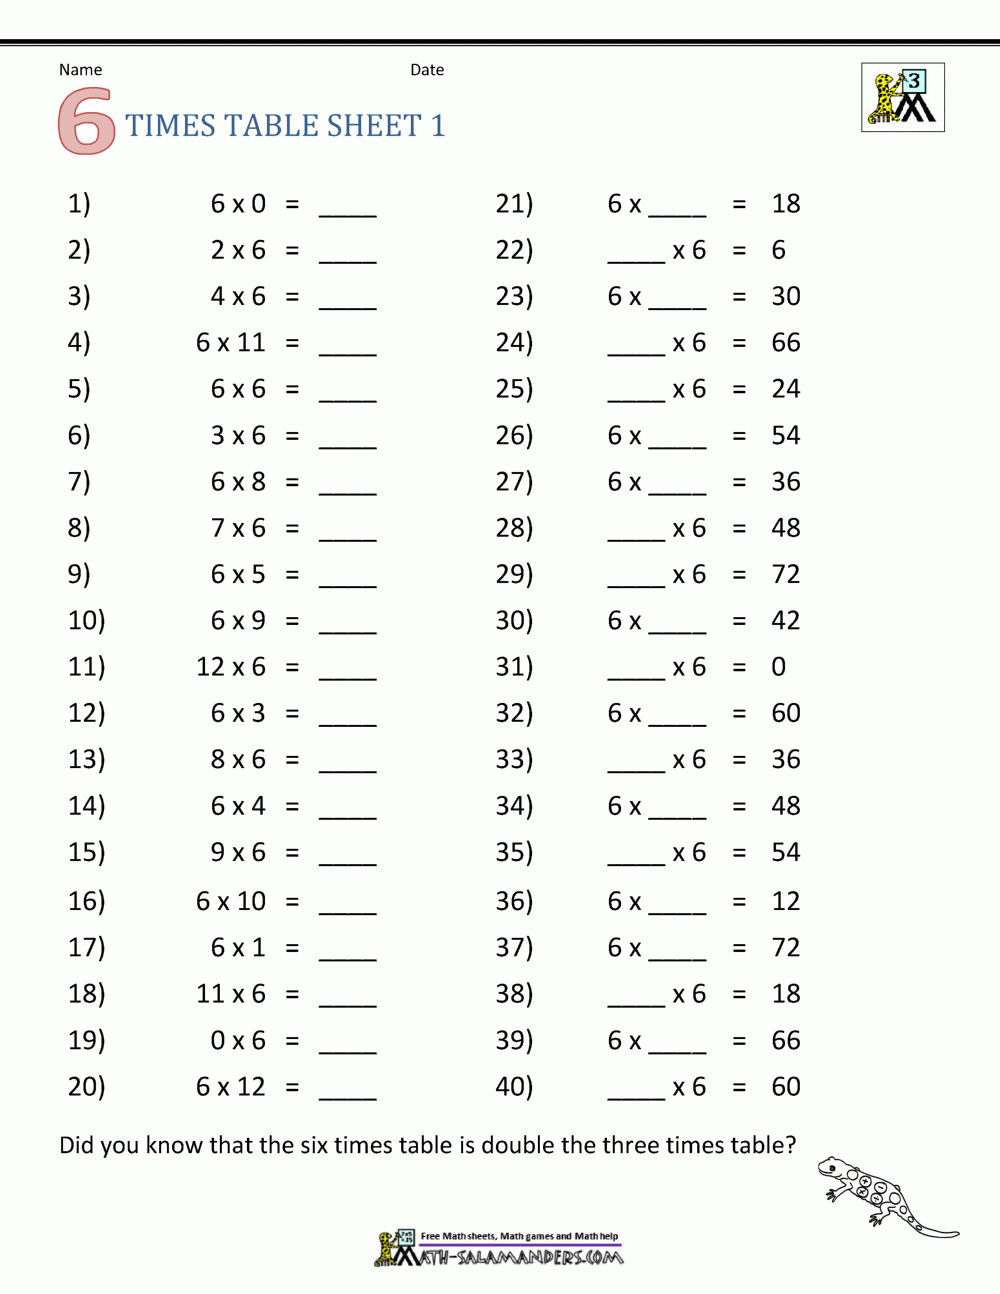 Multiplication Drill Sheets 3Rd Grade regarding Multiplication 7 Printable